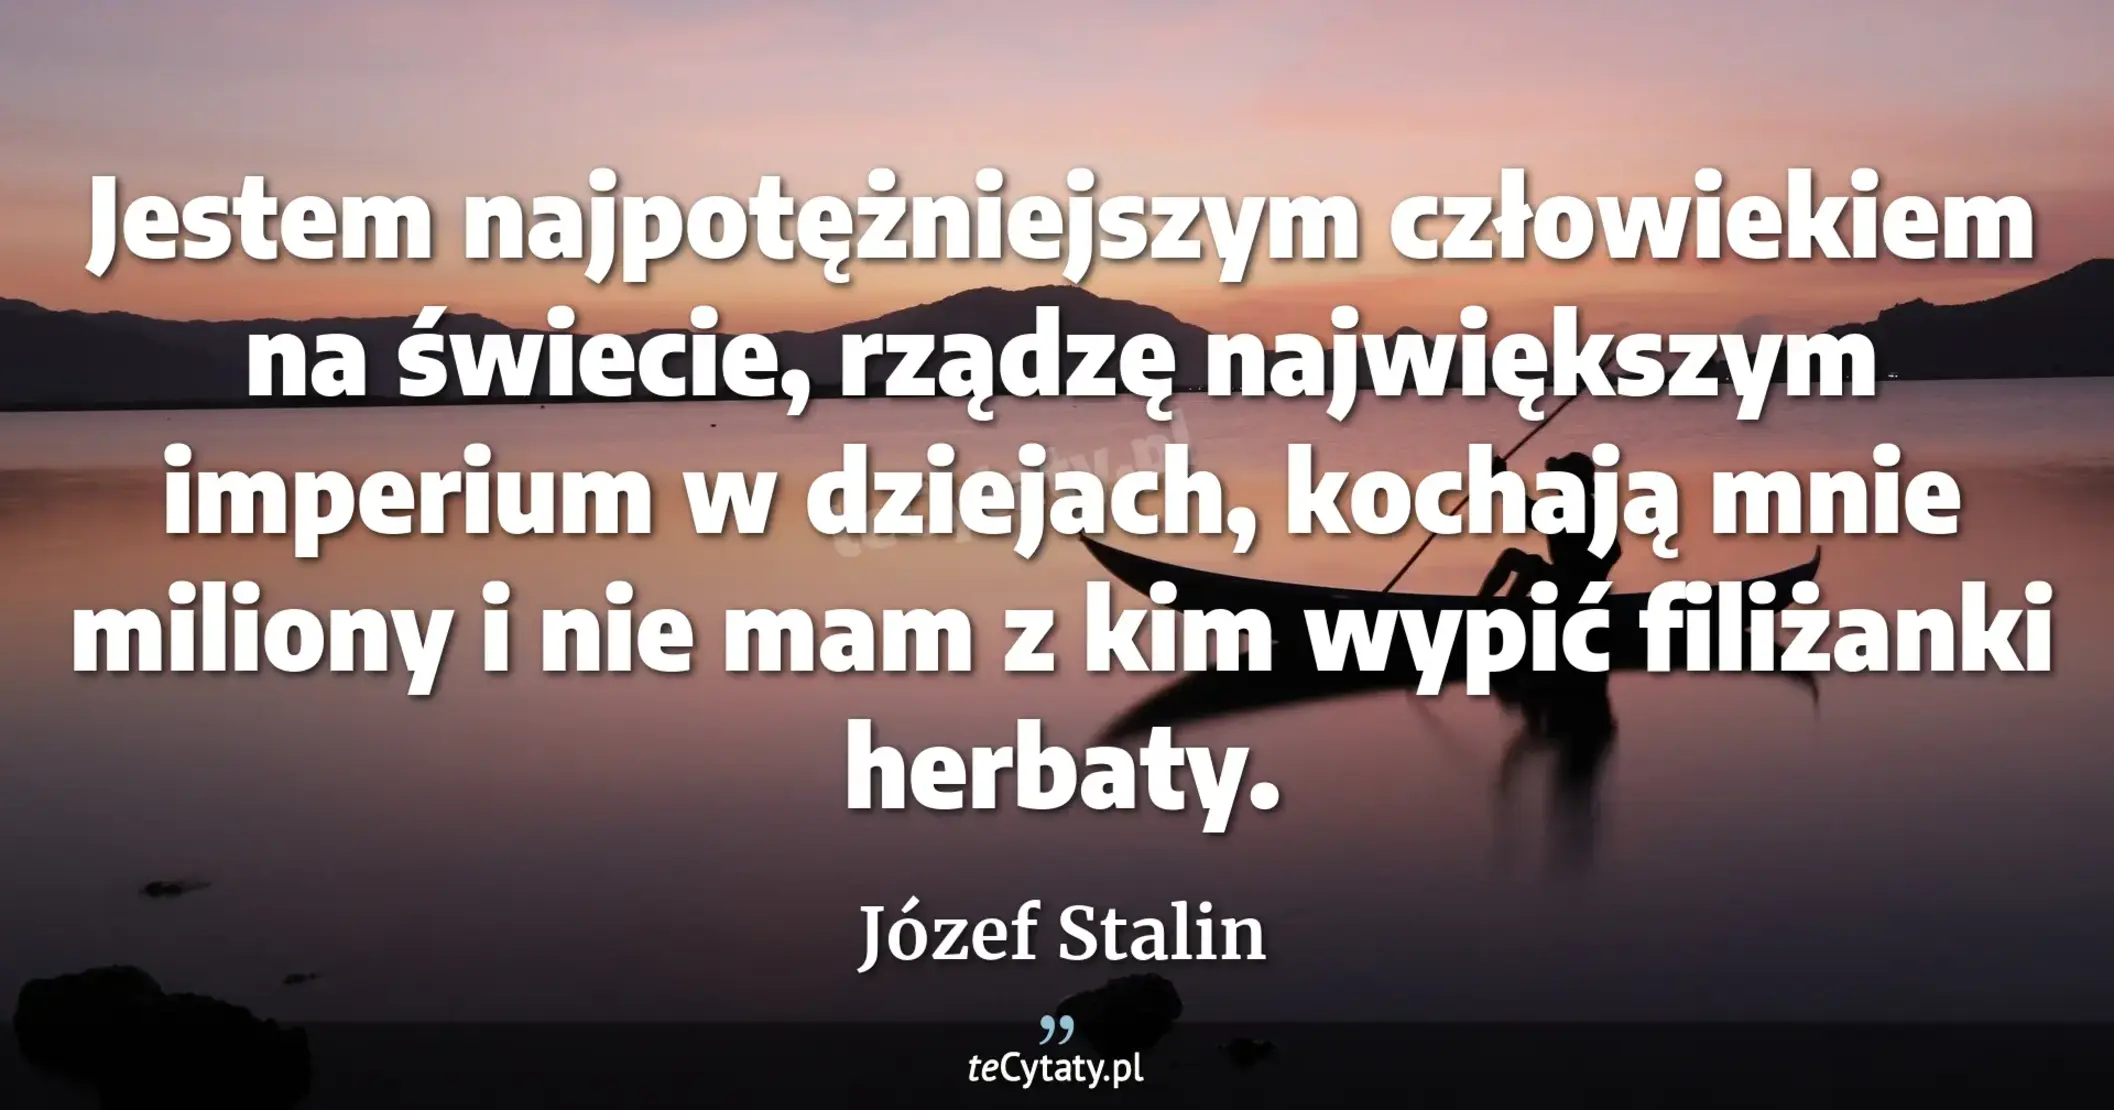 Jestem najpotężniejszym człowiekiem na świecie, rządzę największym imperium w dziejach, kochają mnie miliony i nie mam z kim wypić filiżanki herbaty. - Józef Stalin